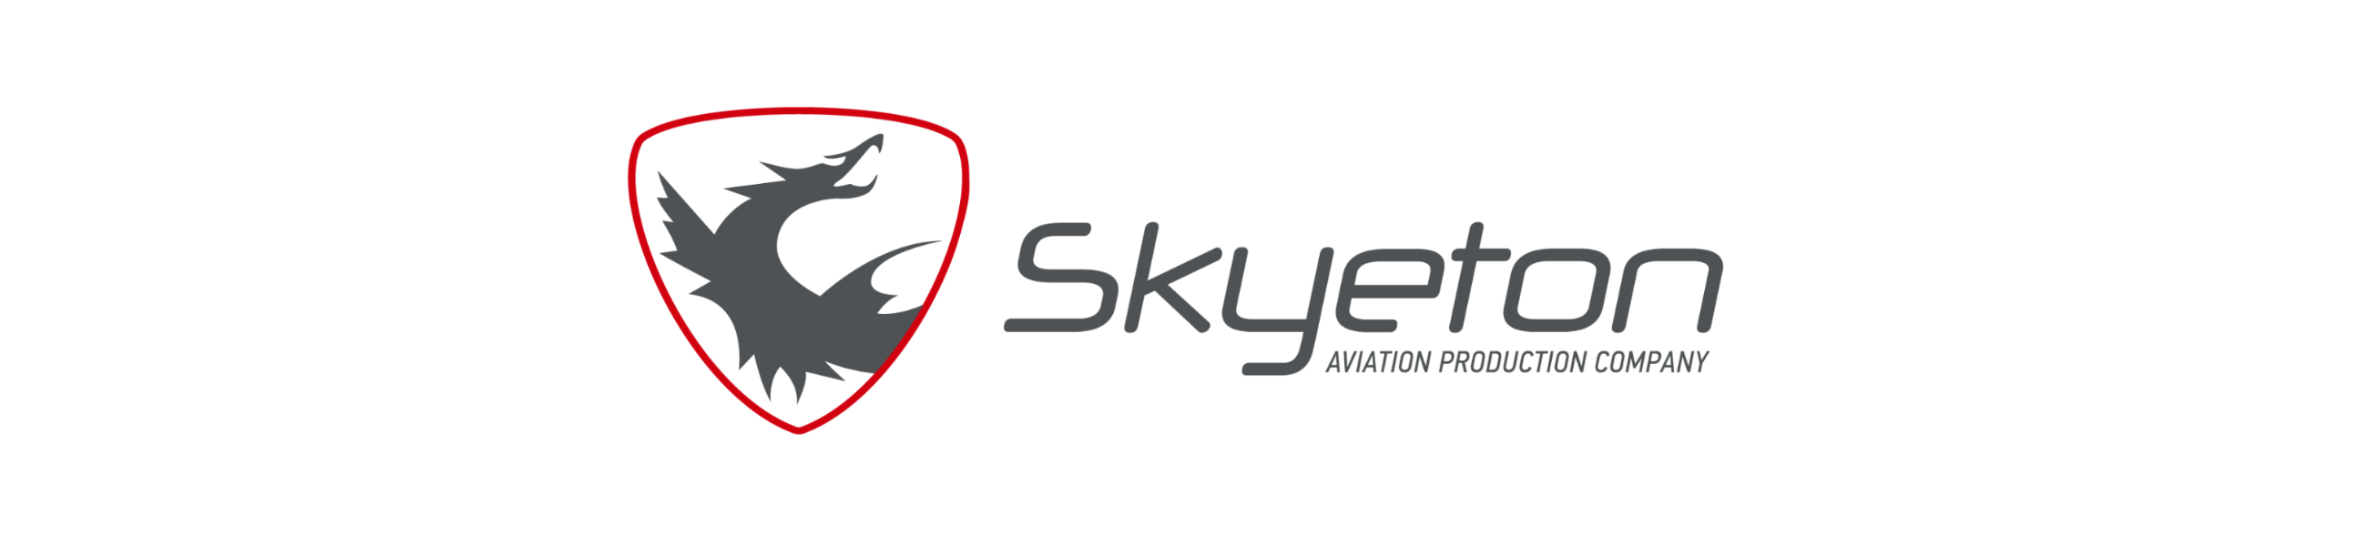 logo-skyeton-printing.png